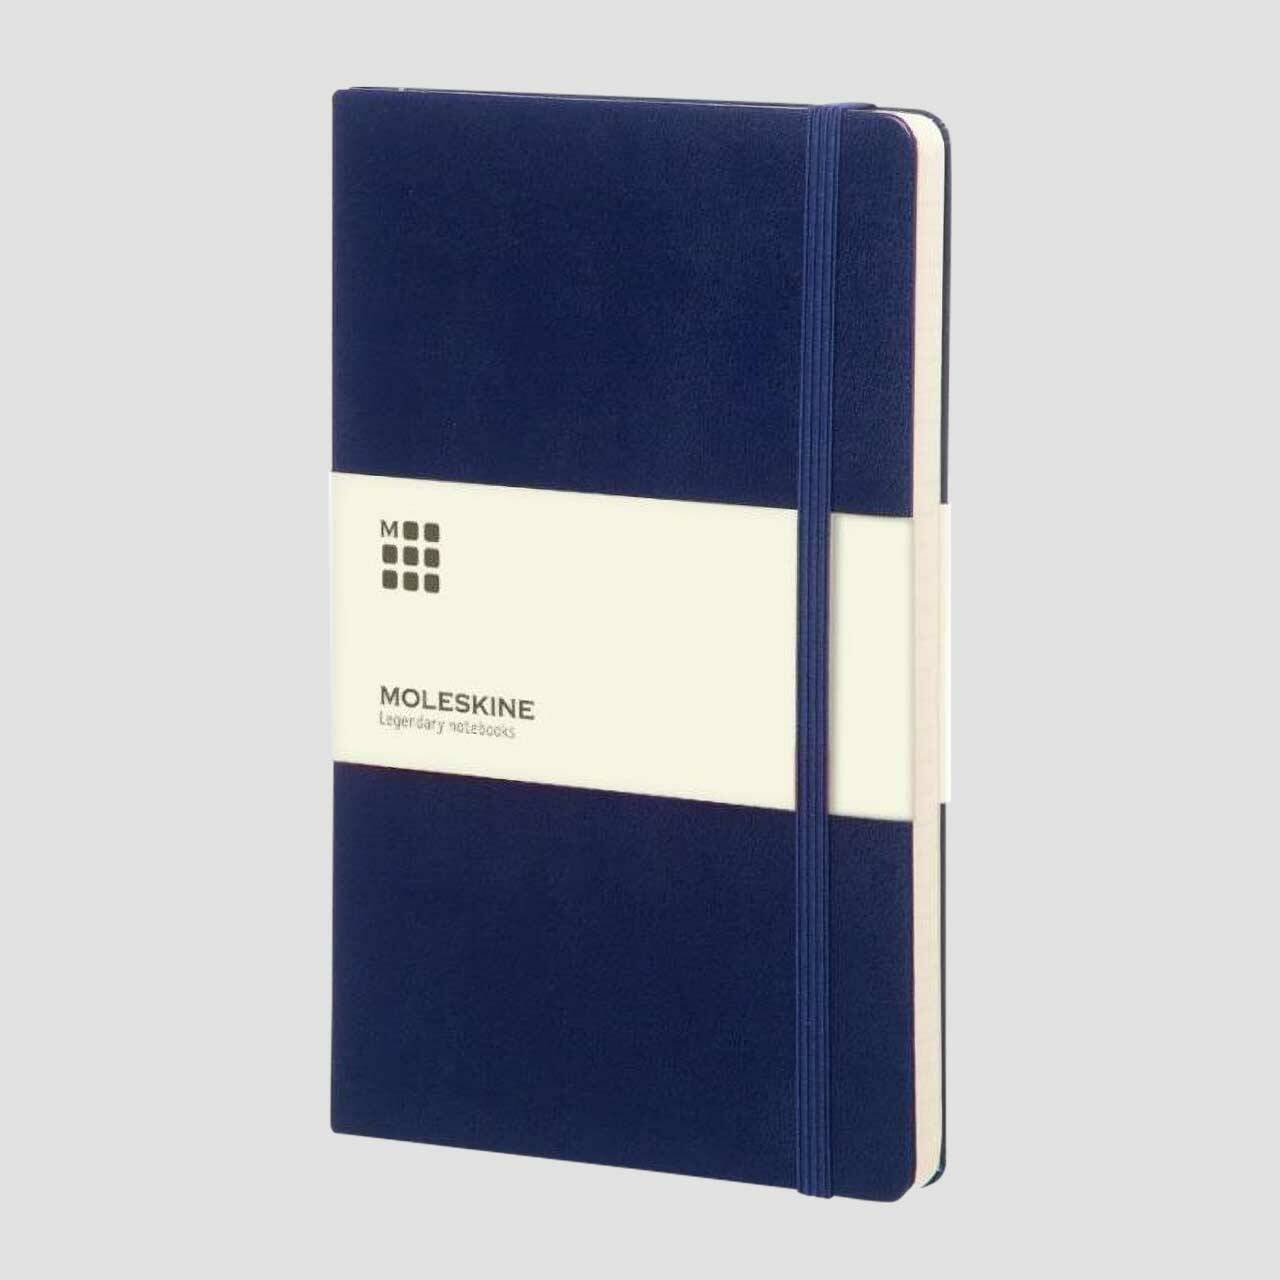 Moleskine notitieboek hard cover met banderol, prussian blauw